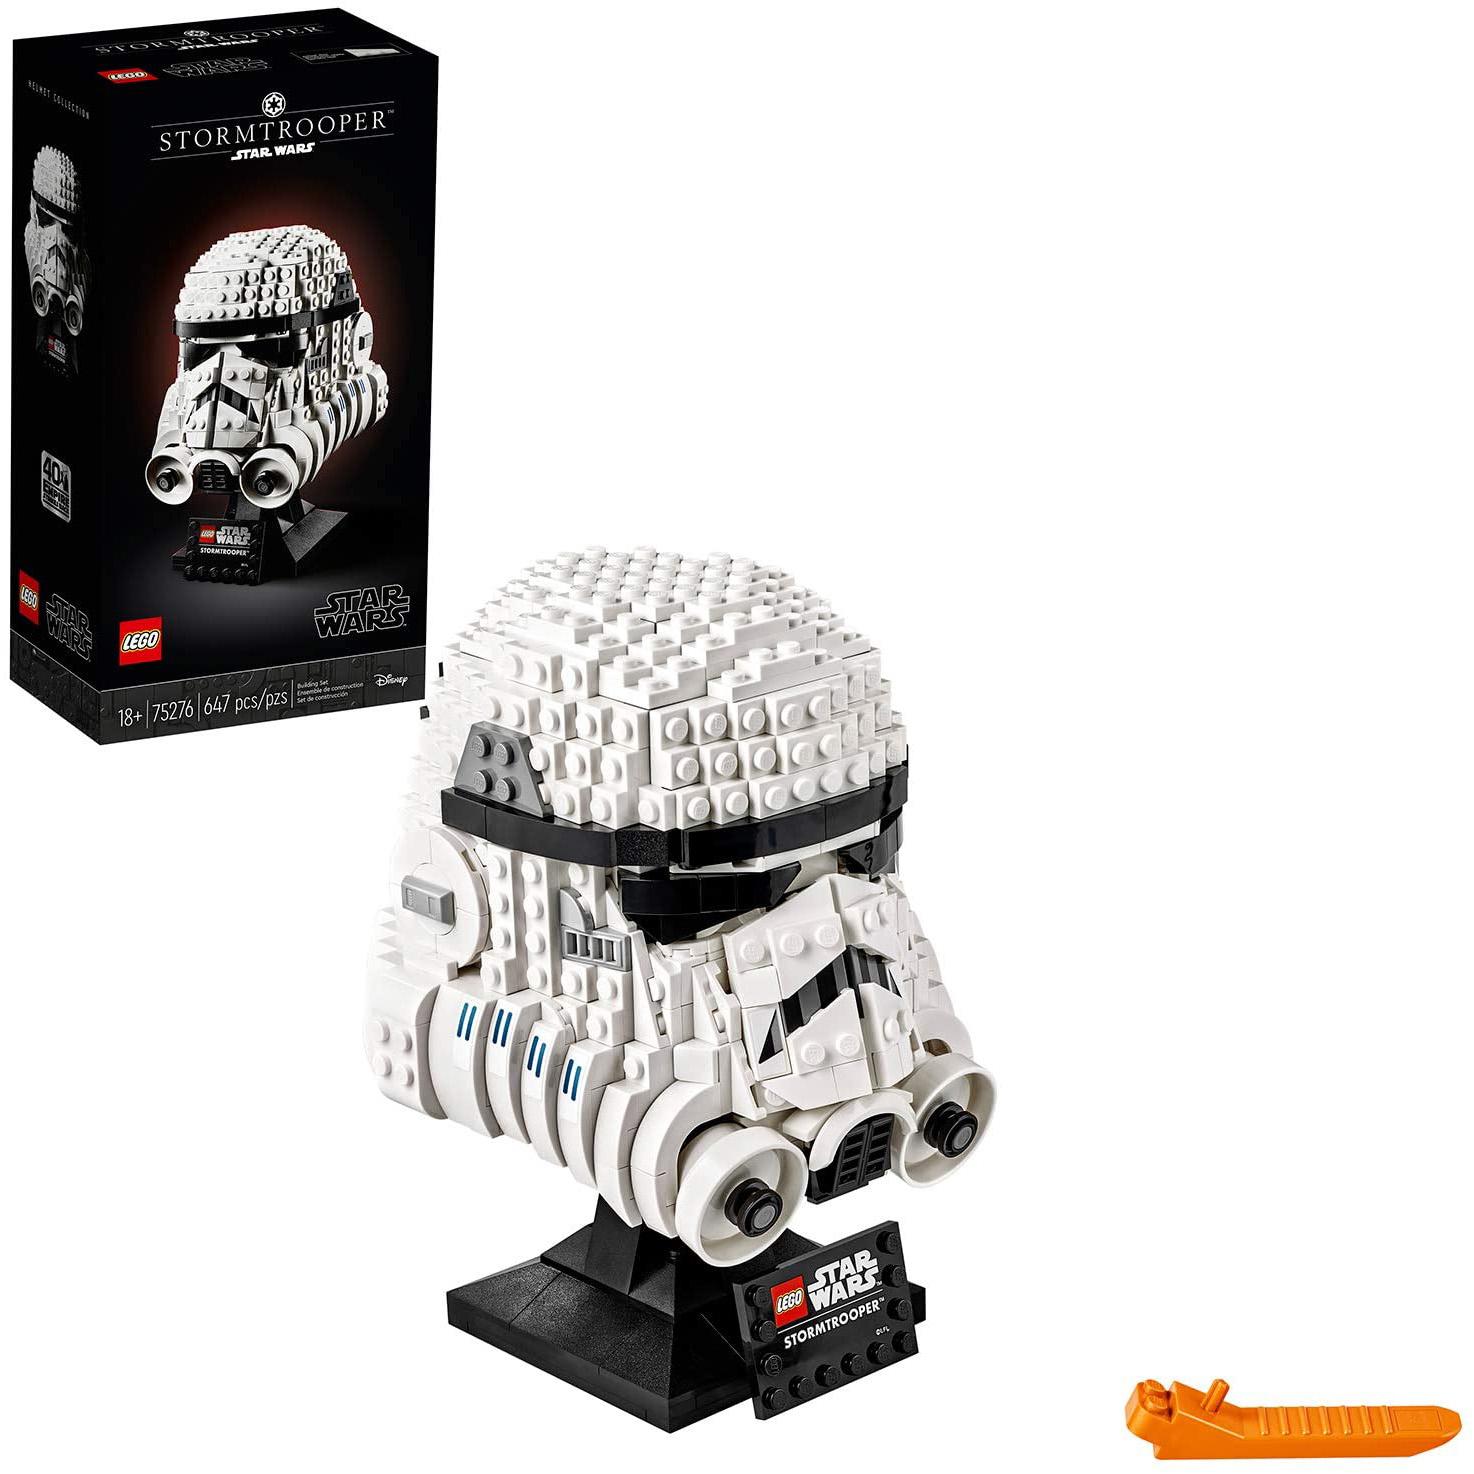 LEGO Star Wars Stormtrooper Helmet 75276 Building Kit for $54.99 Shipped